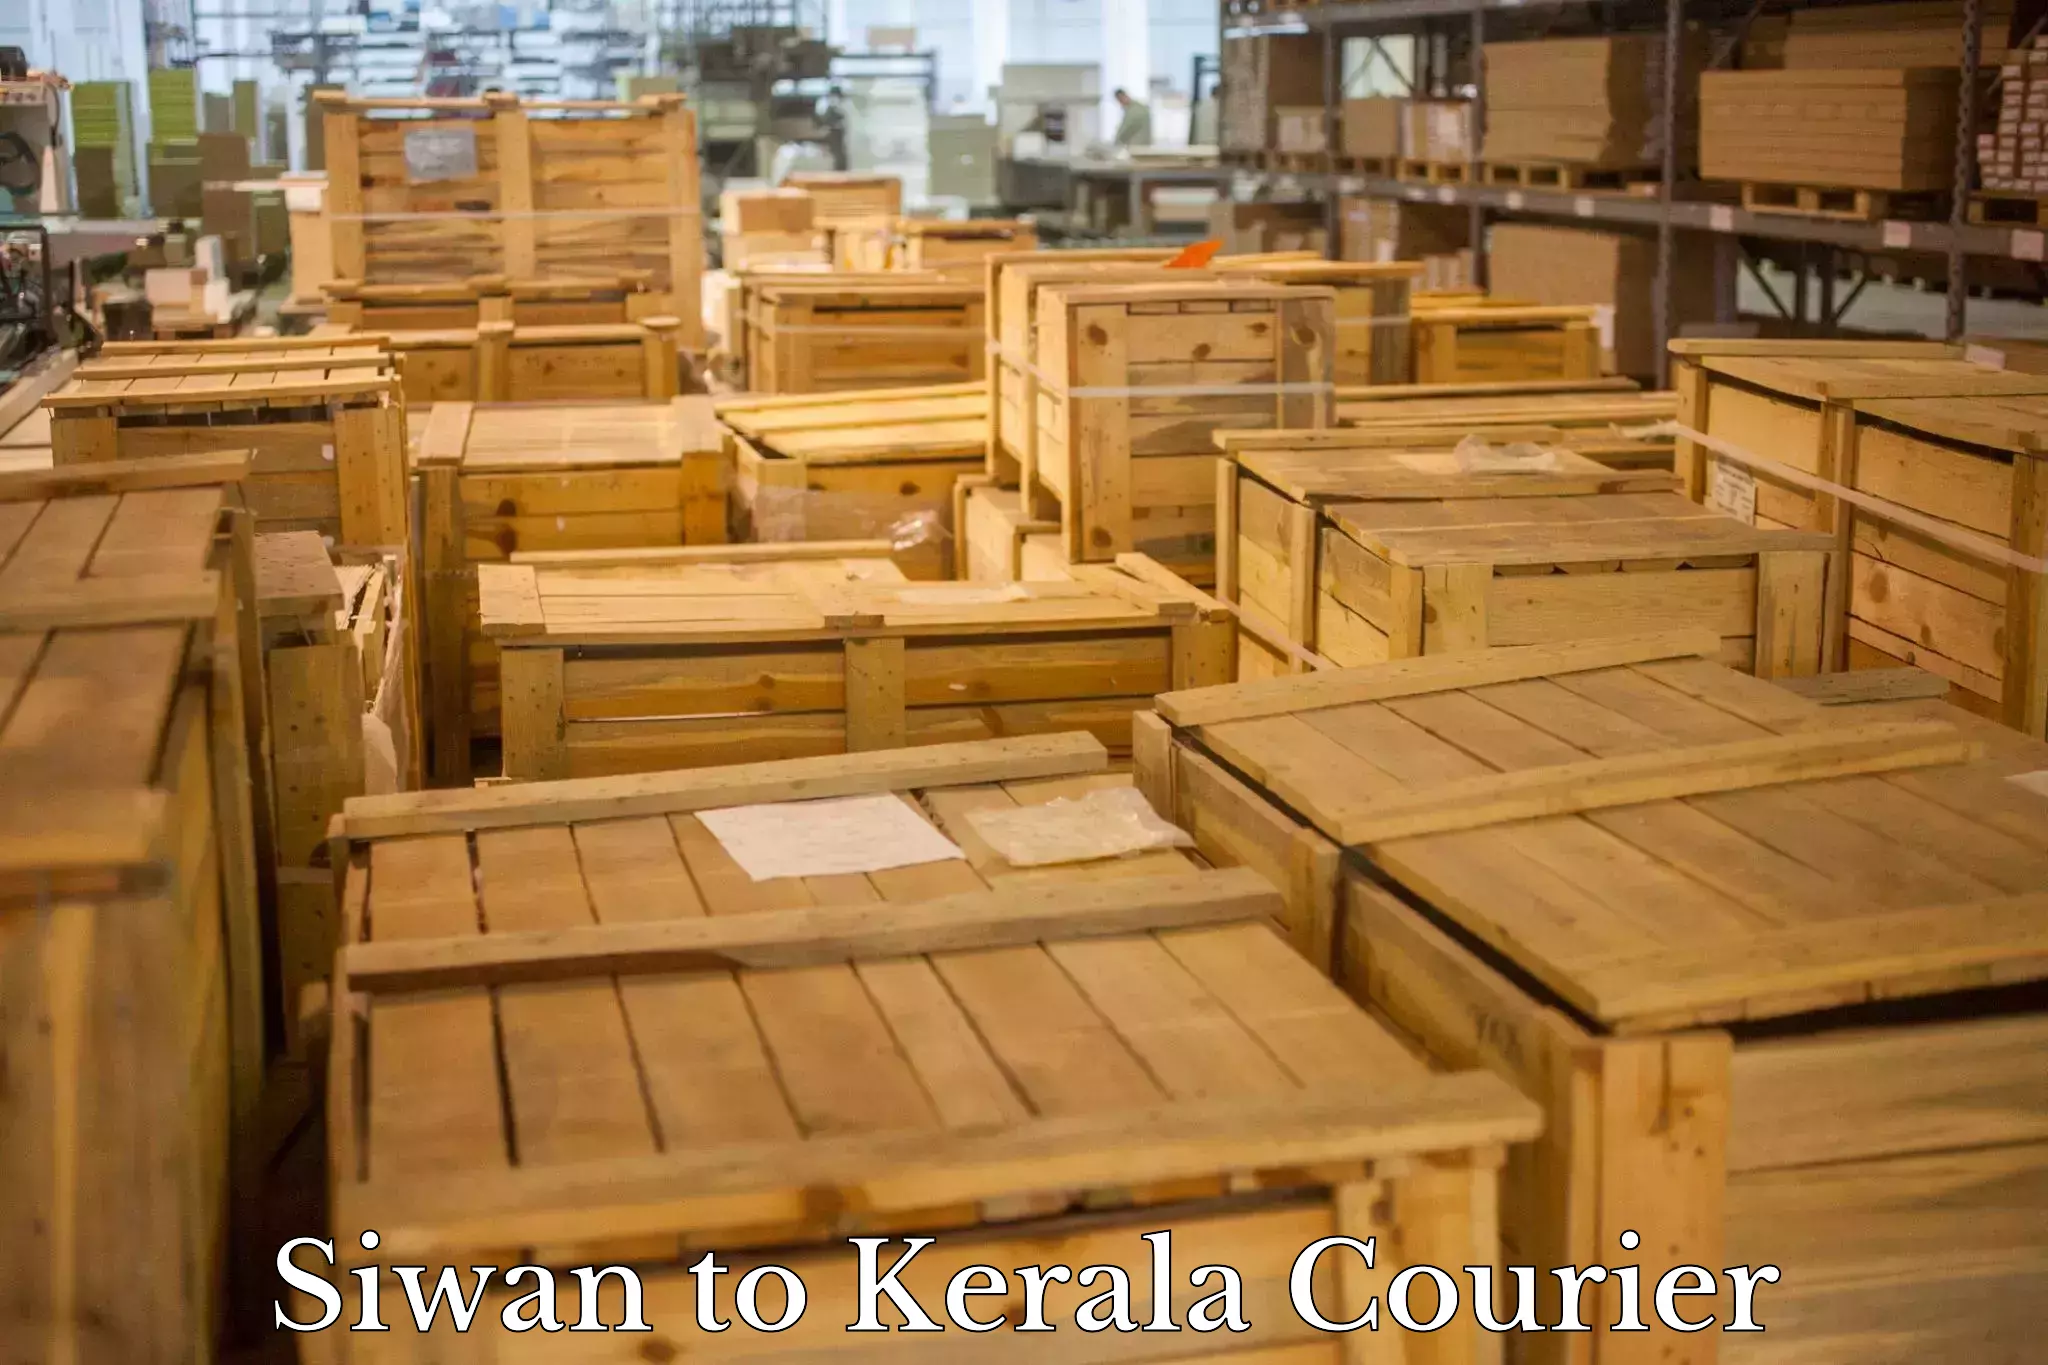 Holiday shipping services Siwan to Kerala